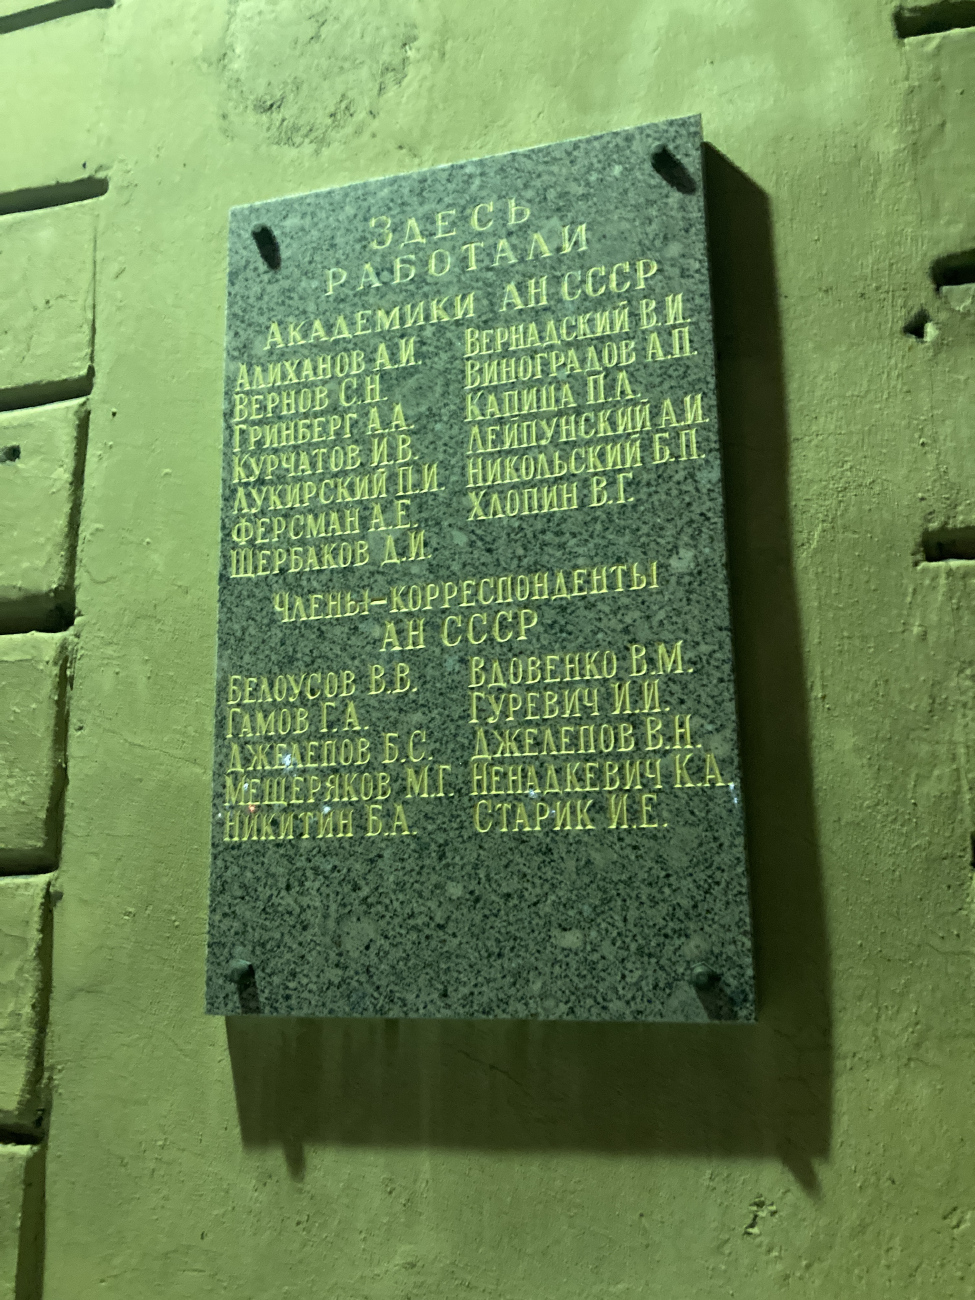 Sankt Petersburg, Улица Рентгена, 1. Sankt Petersburg — Memorial plaques